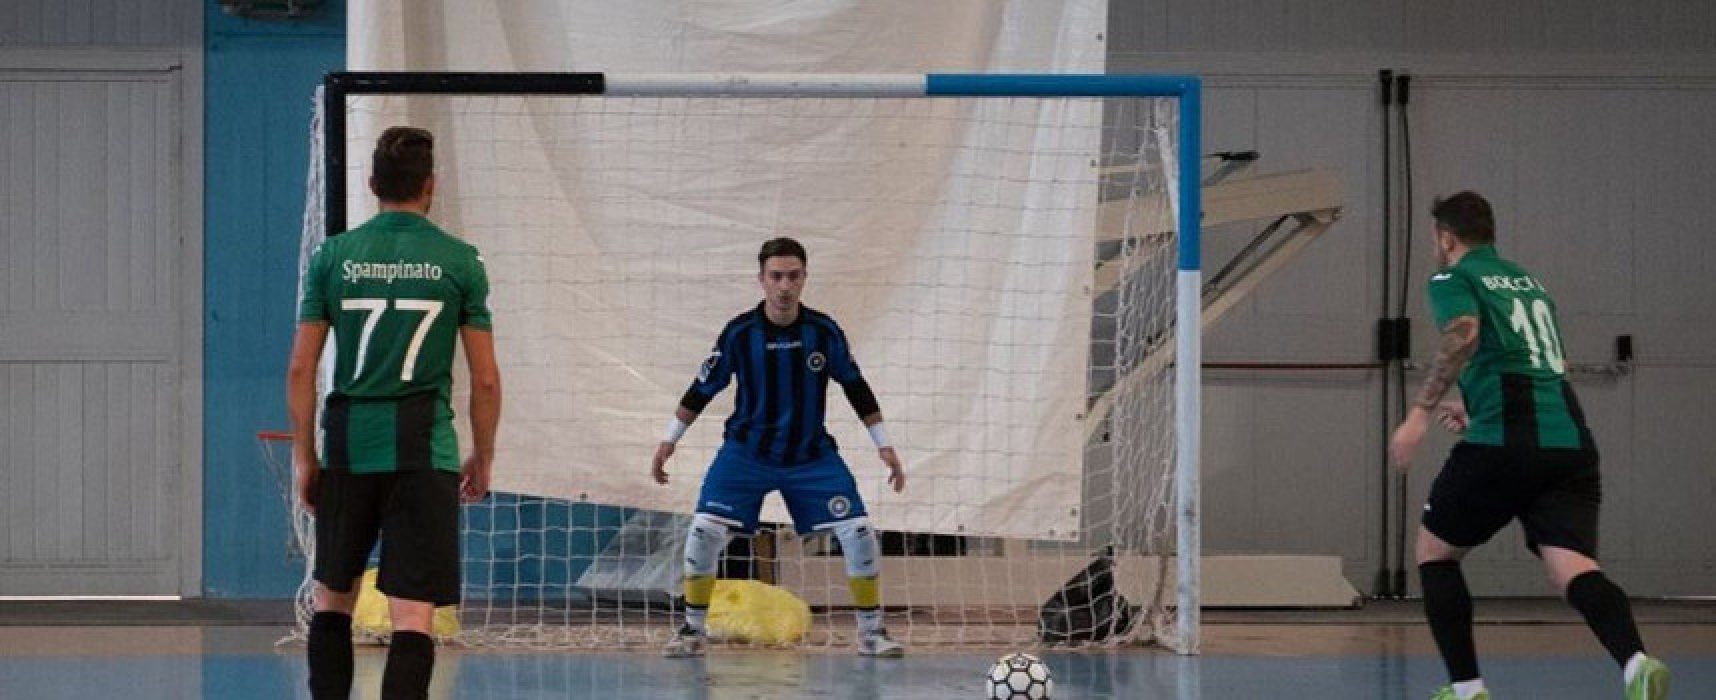 Futsal Bisceglie, termina il rapporto con il portiere Mitrotta